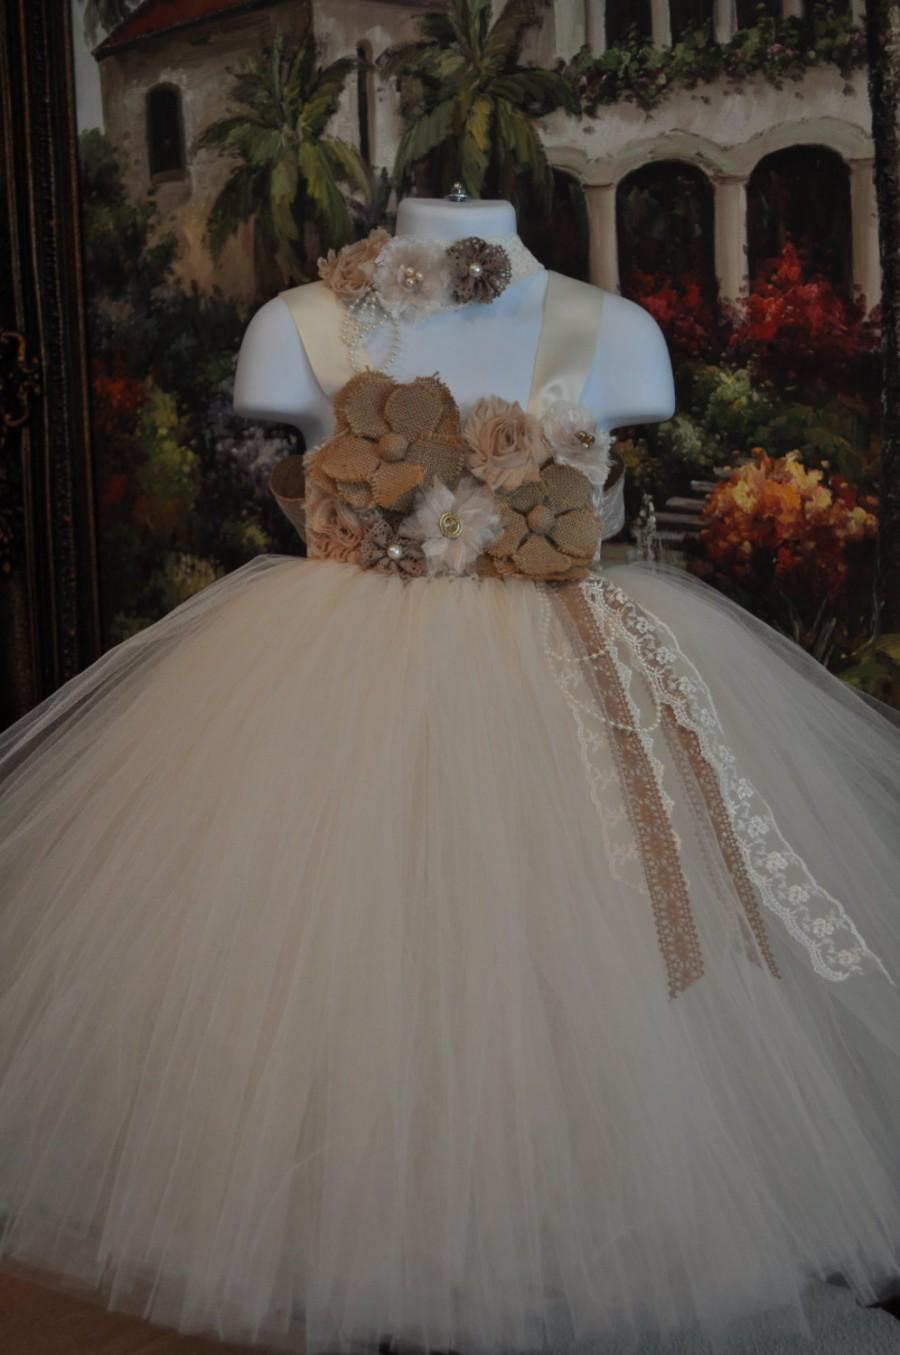 زفاف - Special Occasion Dress, Flower Girl Dress, Tutu Dress, Girls Dress, Baby Dress, Toddler Dress, Rustic Dress, Burlap Dress, Ivory Dress